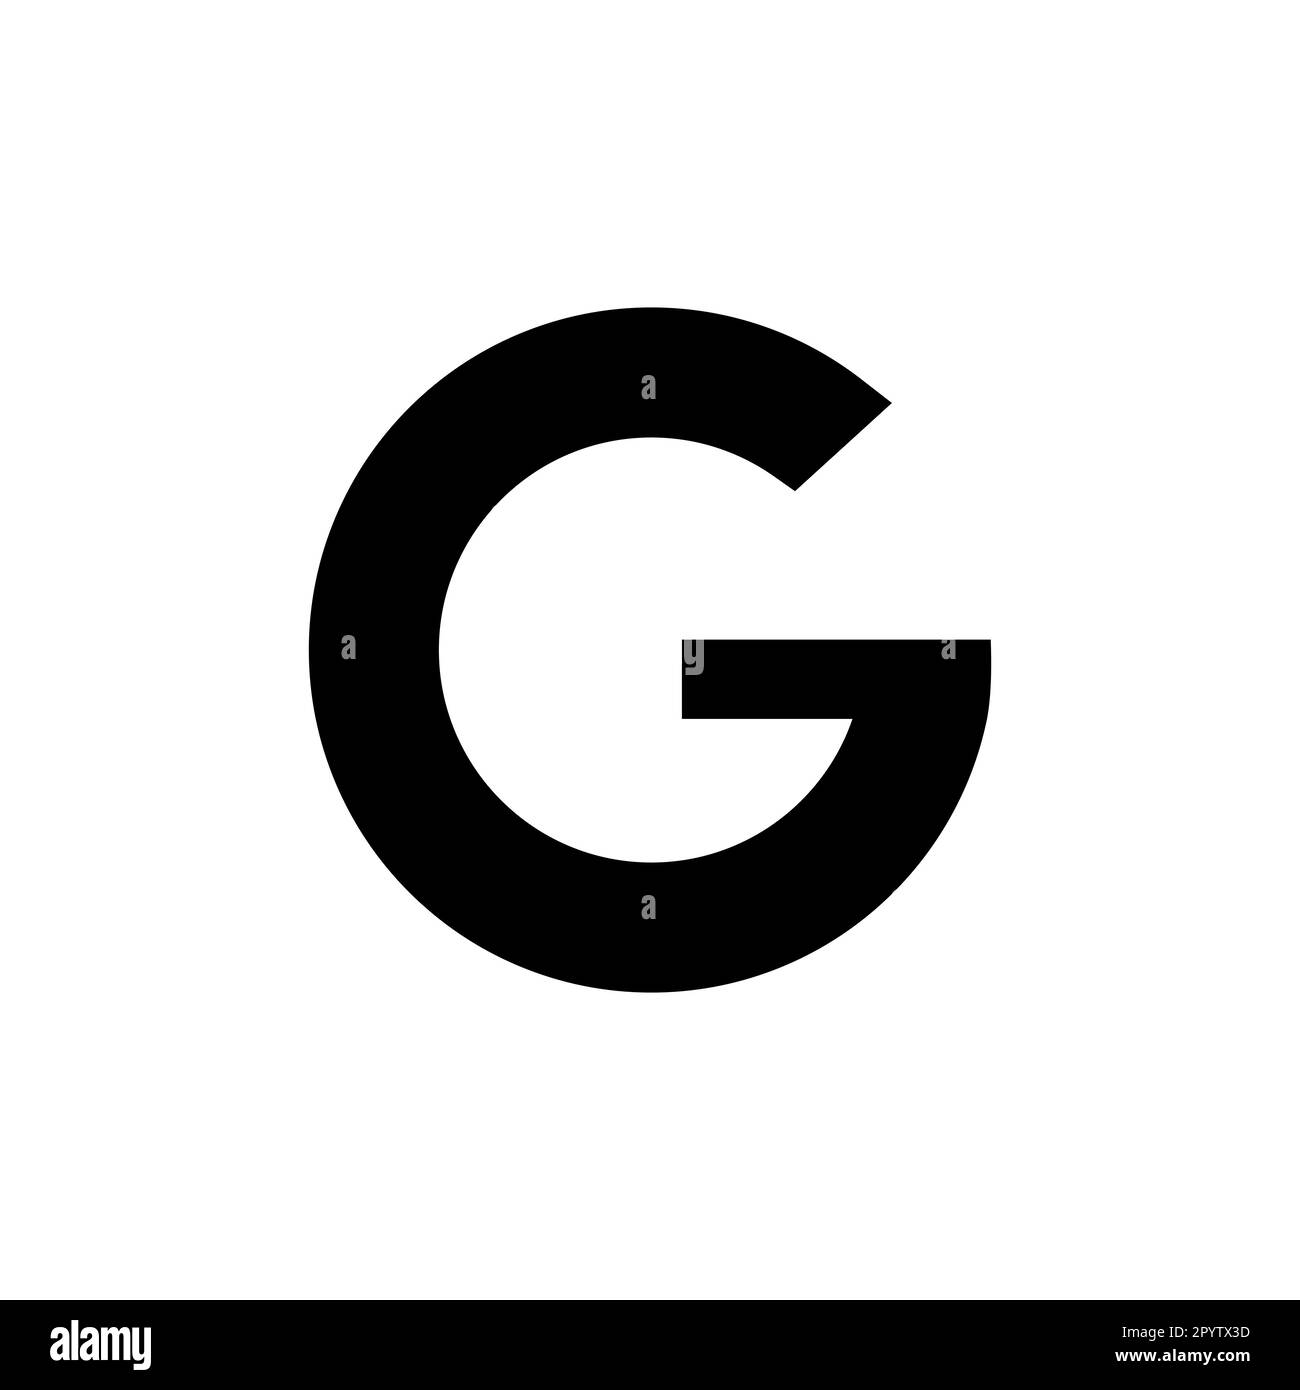 G letter logo, icon design Stock Vector